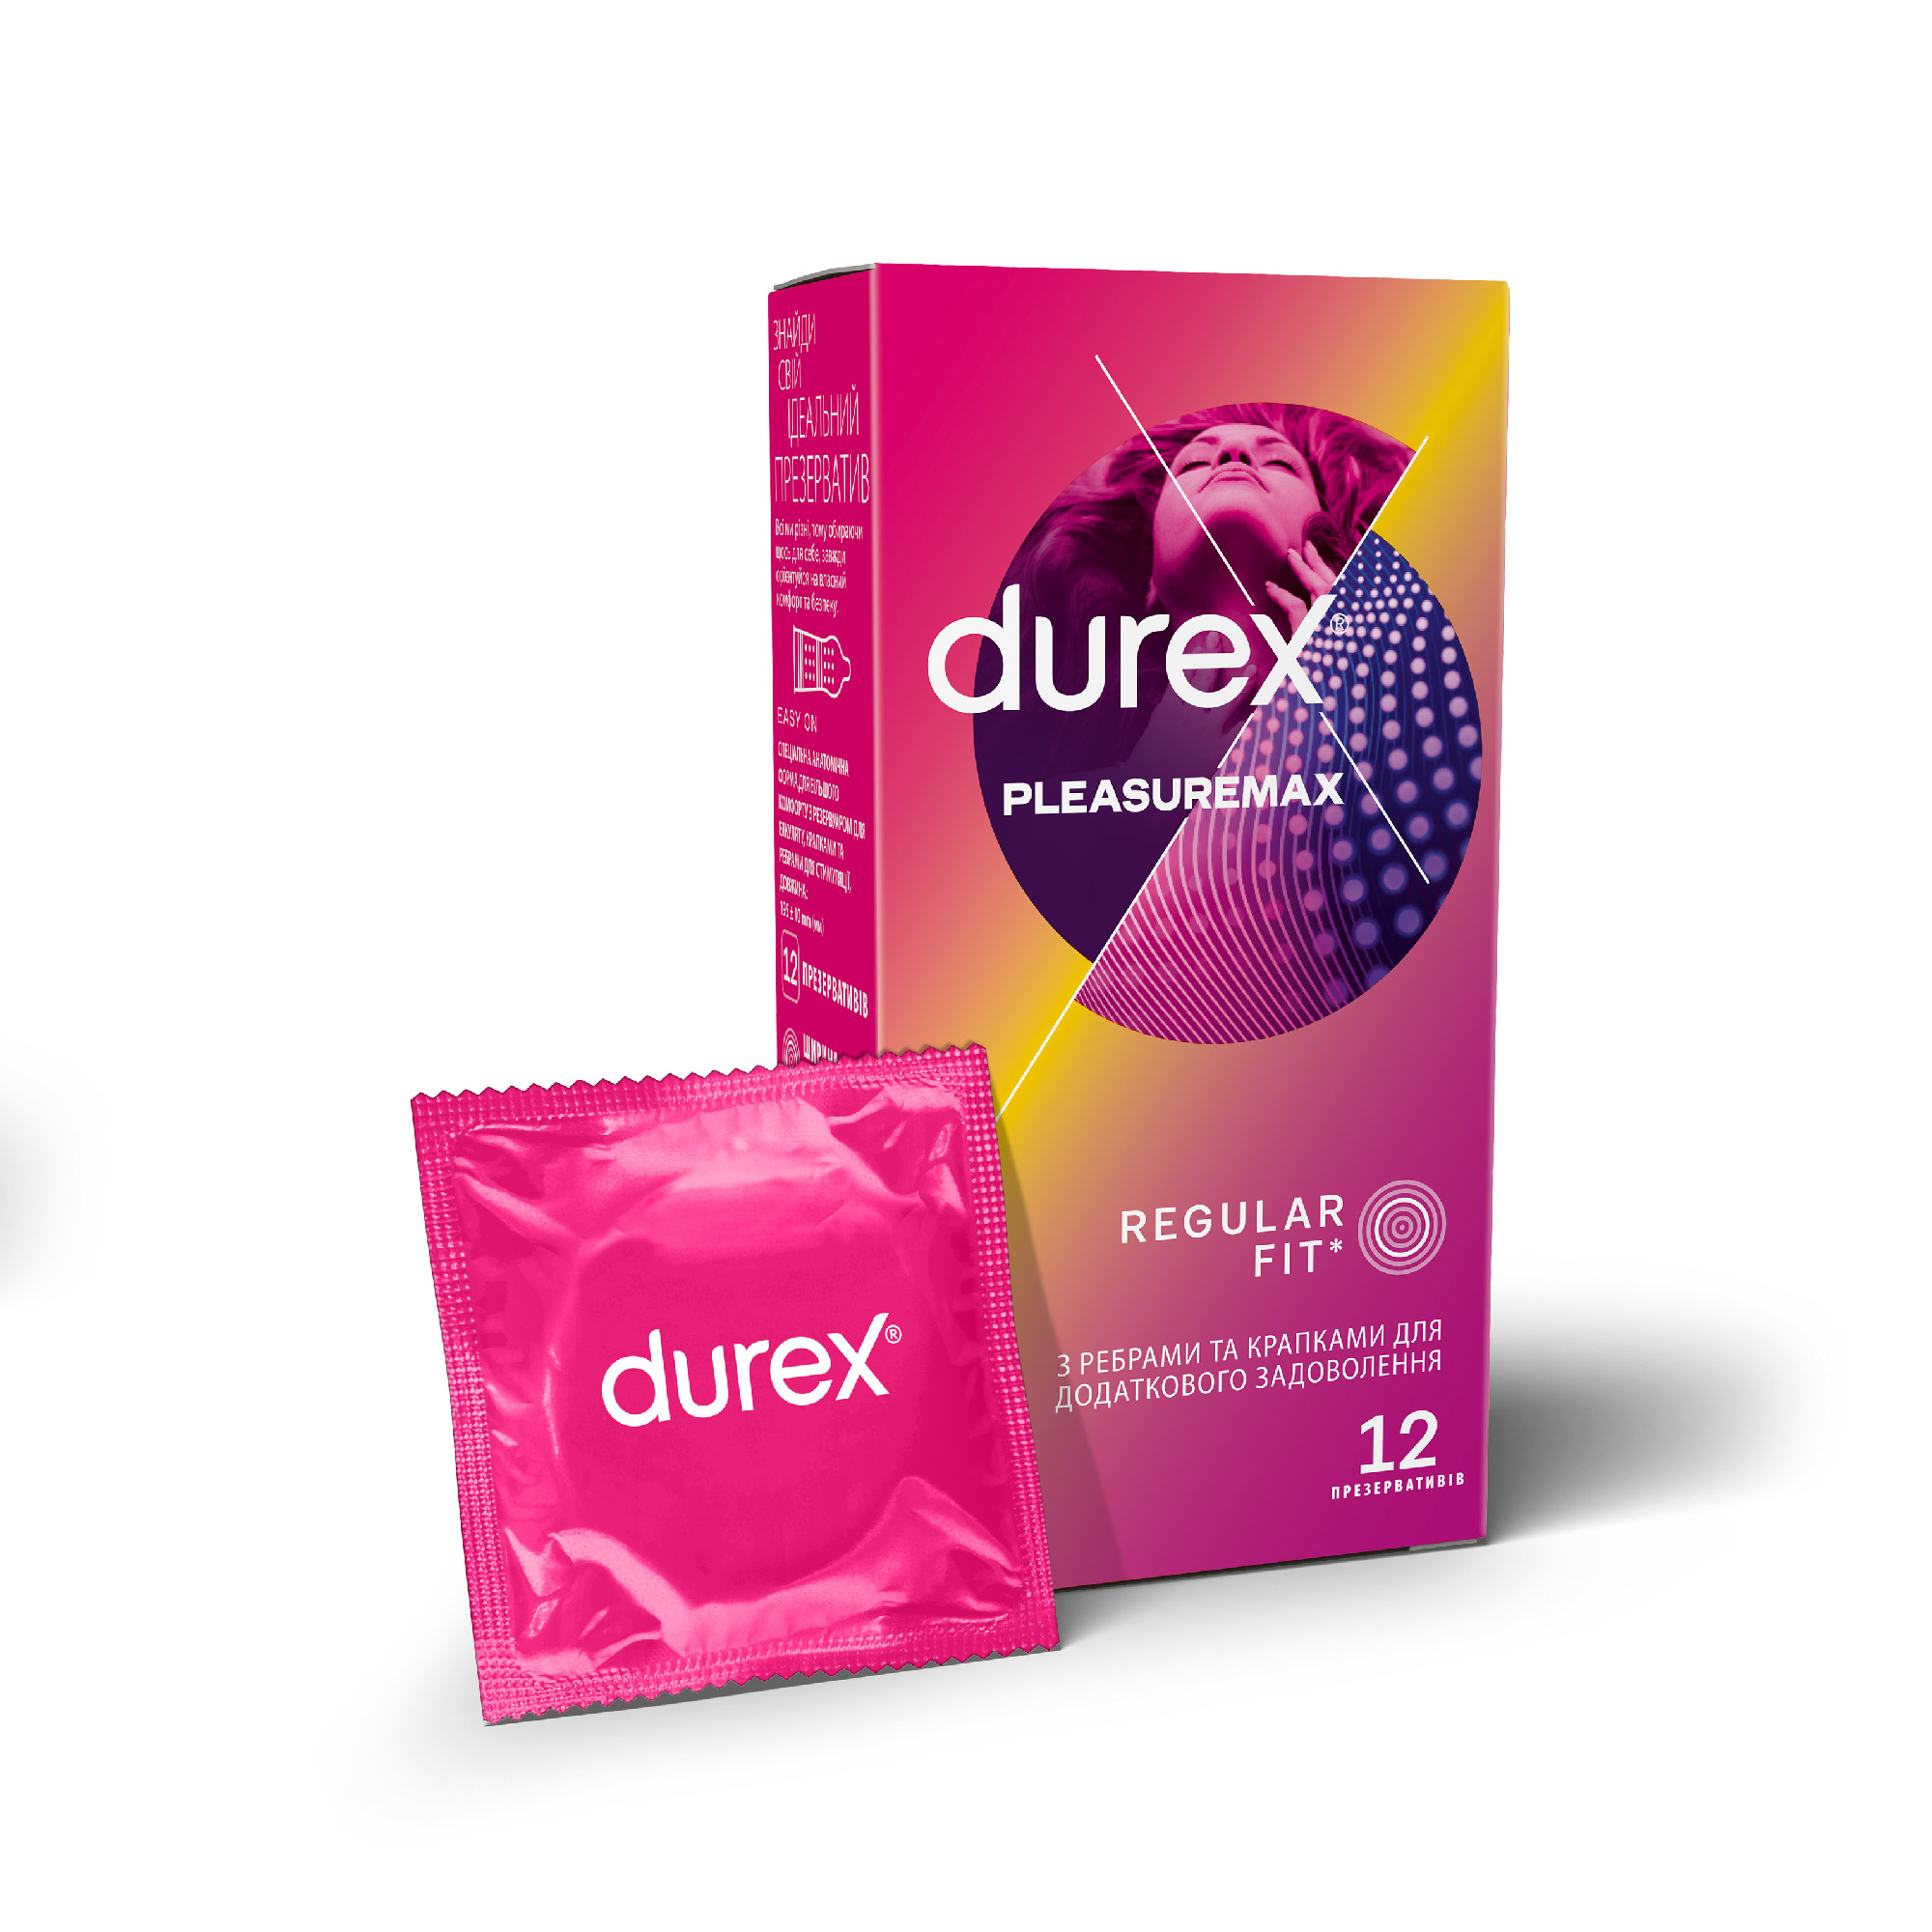 Презервативы Durex (Дюрекс) Pleasuremax с ребрами и точками для дополнительного удовольствия, 12 шт.